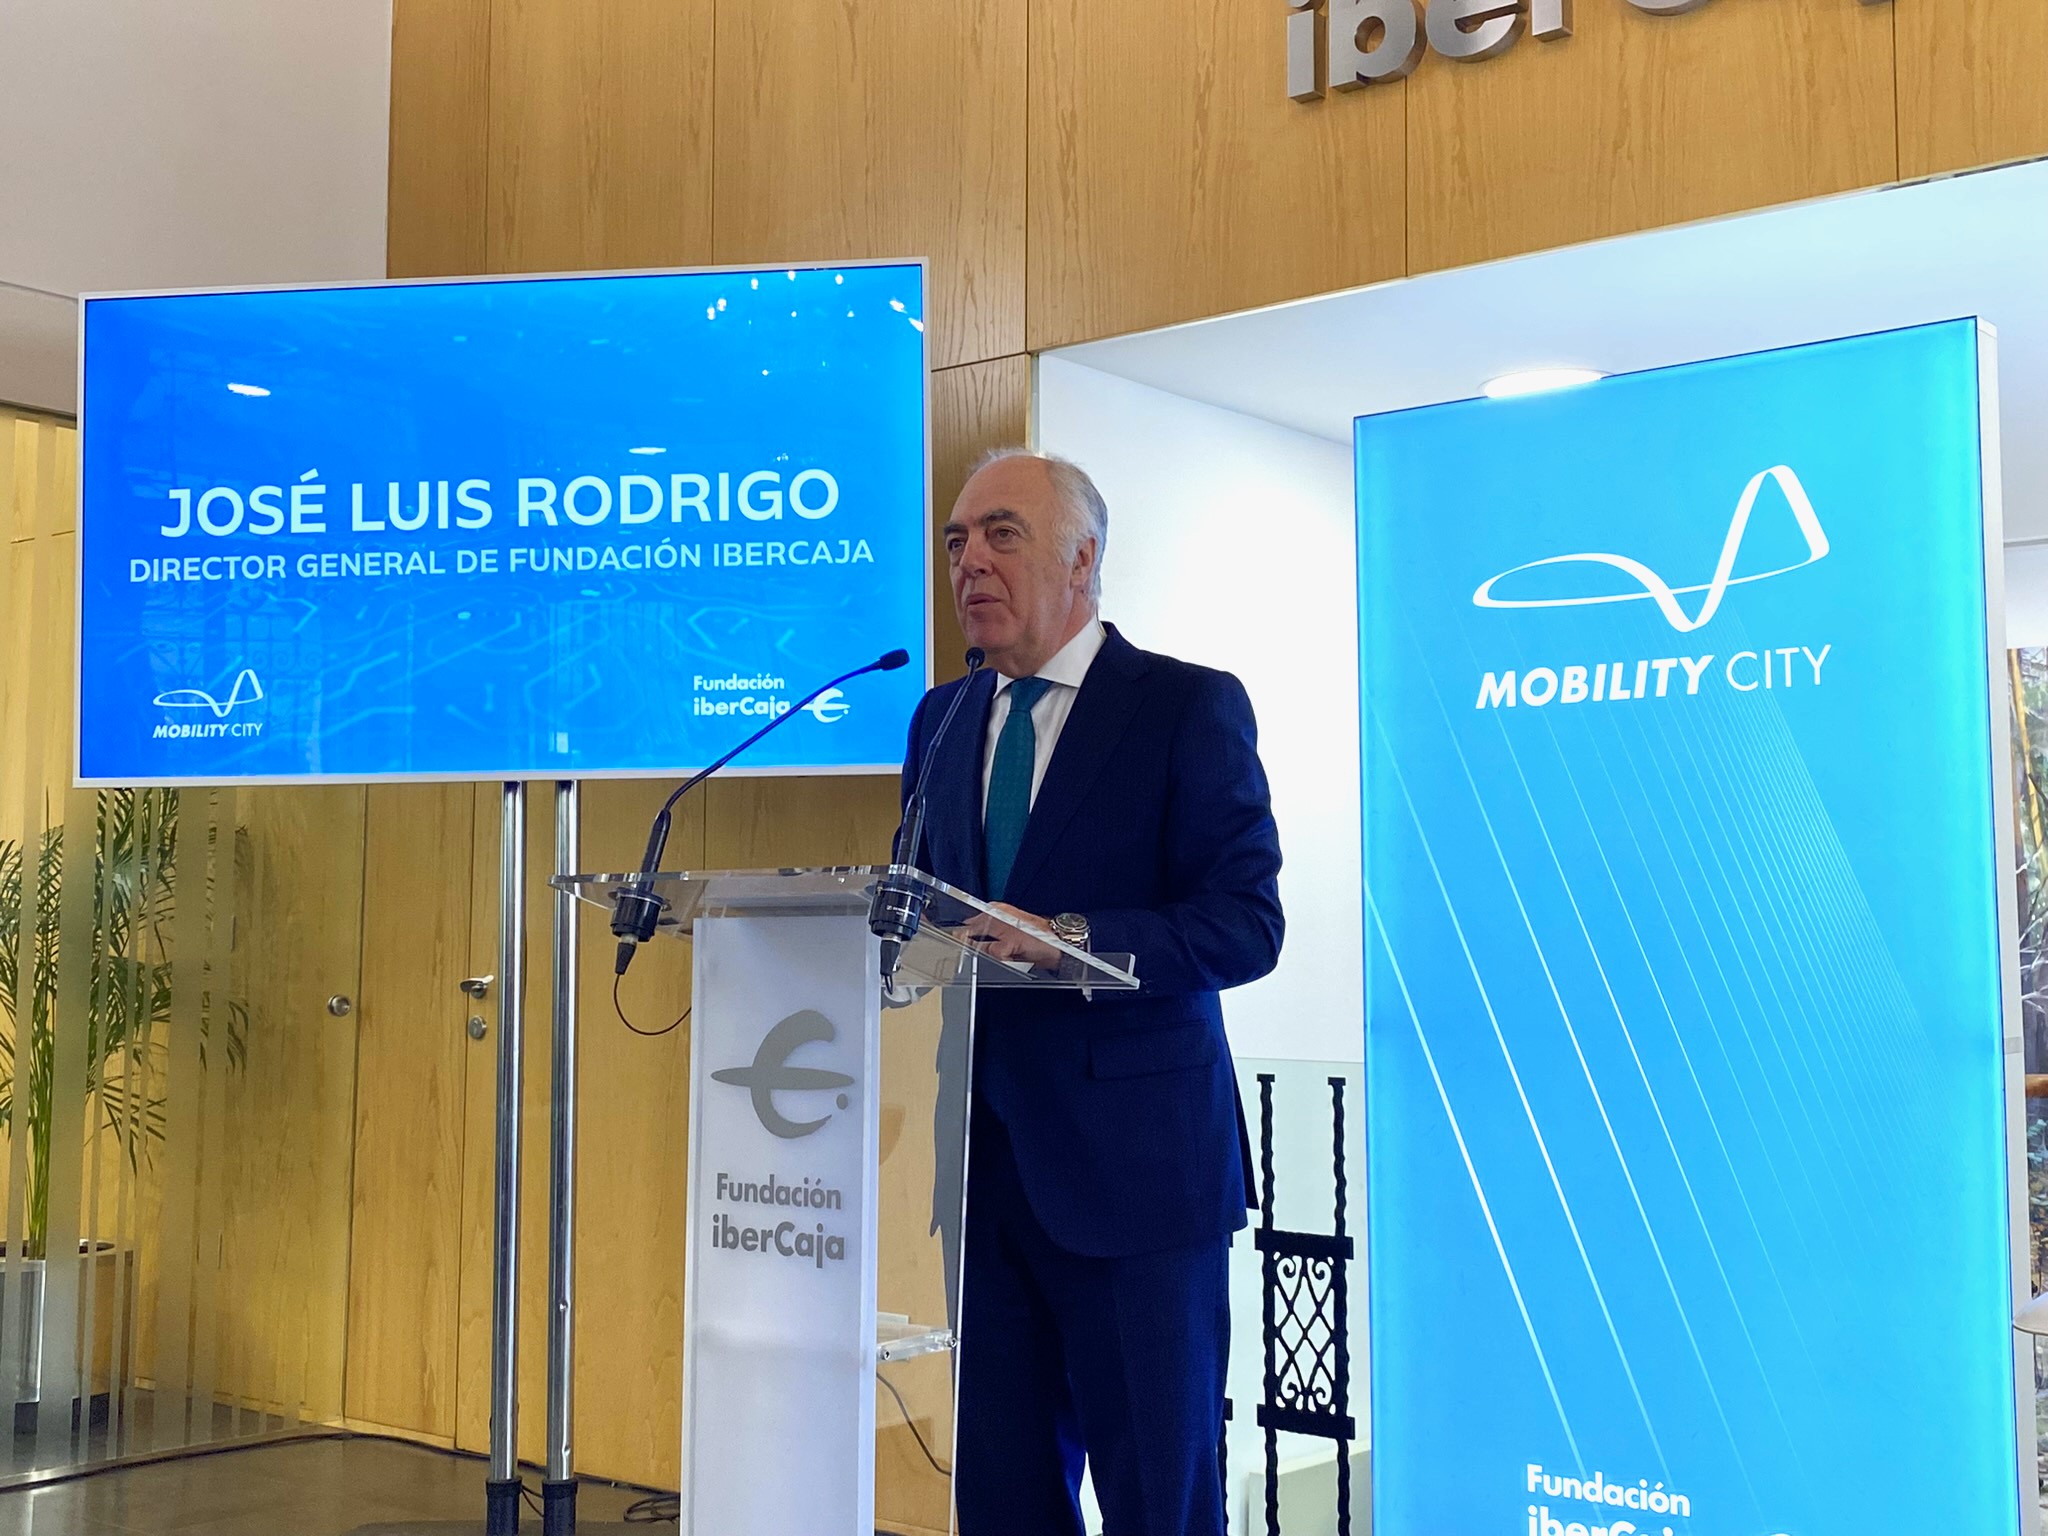 José Luis Rodrigo, Director General de Fundación Ibercaja, en la rueda de prensa de presentación de Mobility City